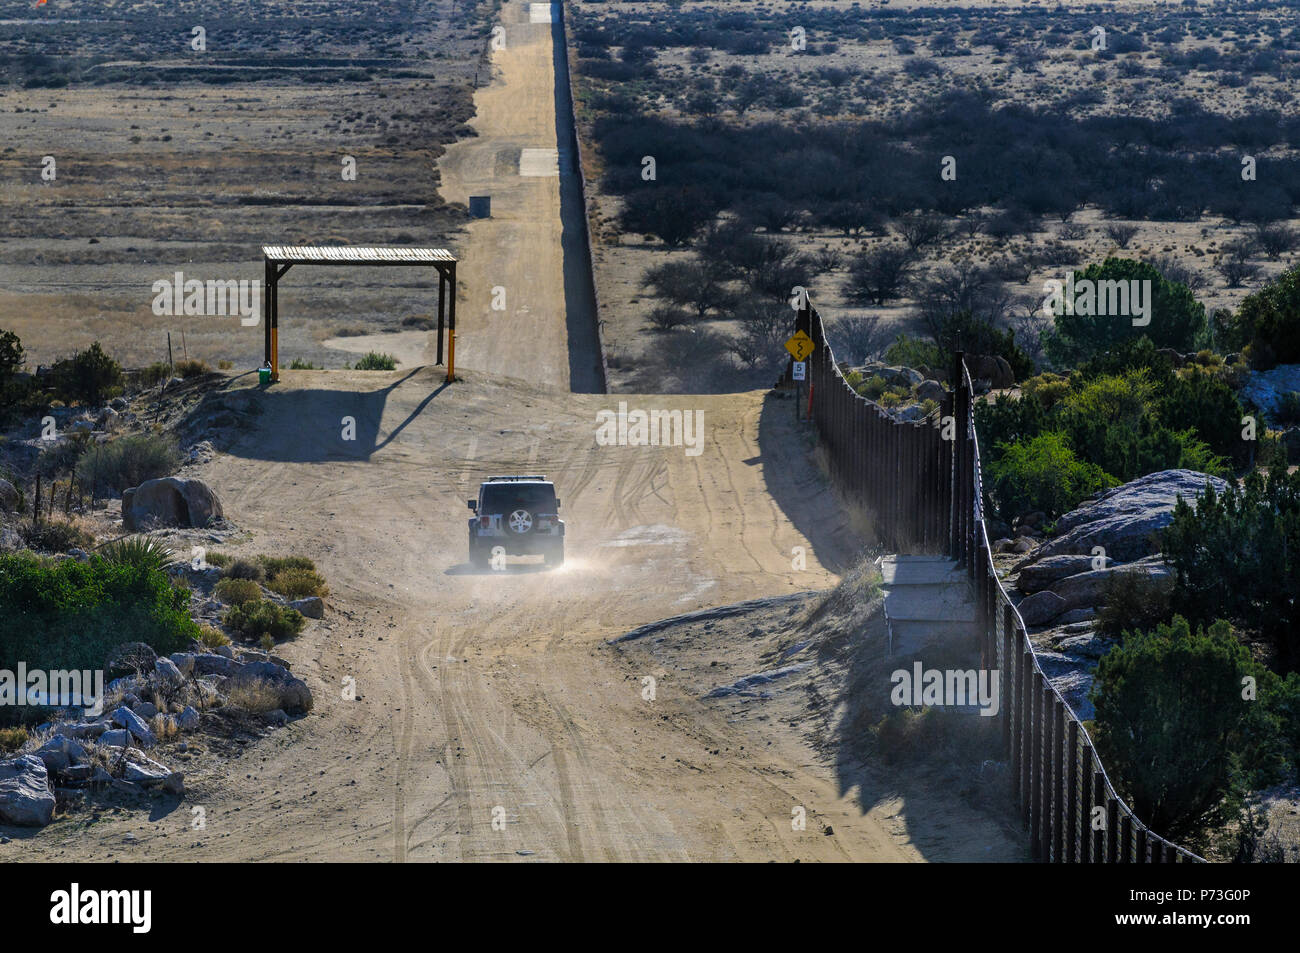 US Border Patrol véhicule à proximité de l'atterrissage en acier mat' 'clôture près de Jacumba en Californie, à la recherche, de l'est remarque structure d'ombrage sur la gauche construit de CBP véhicule. Banque D'Images